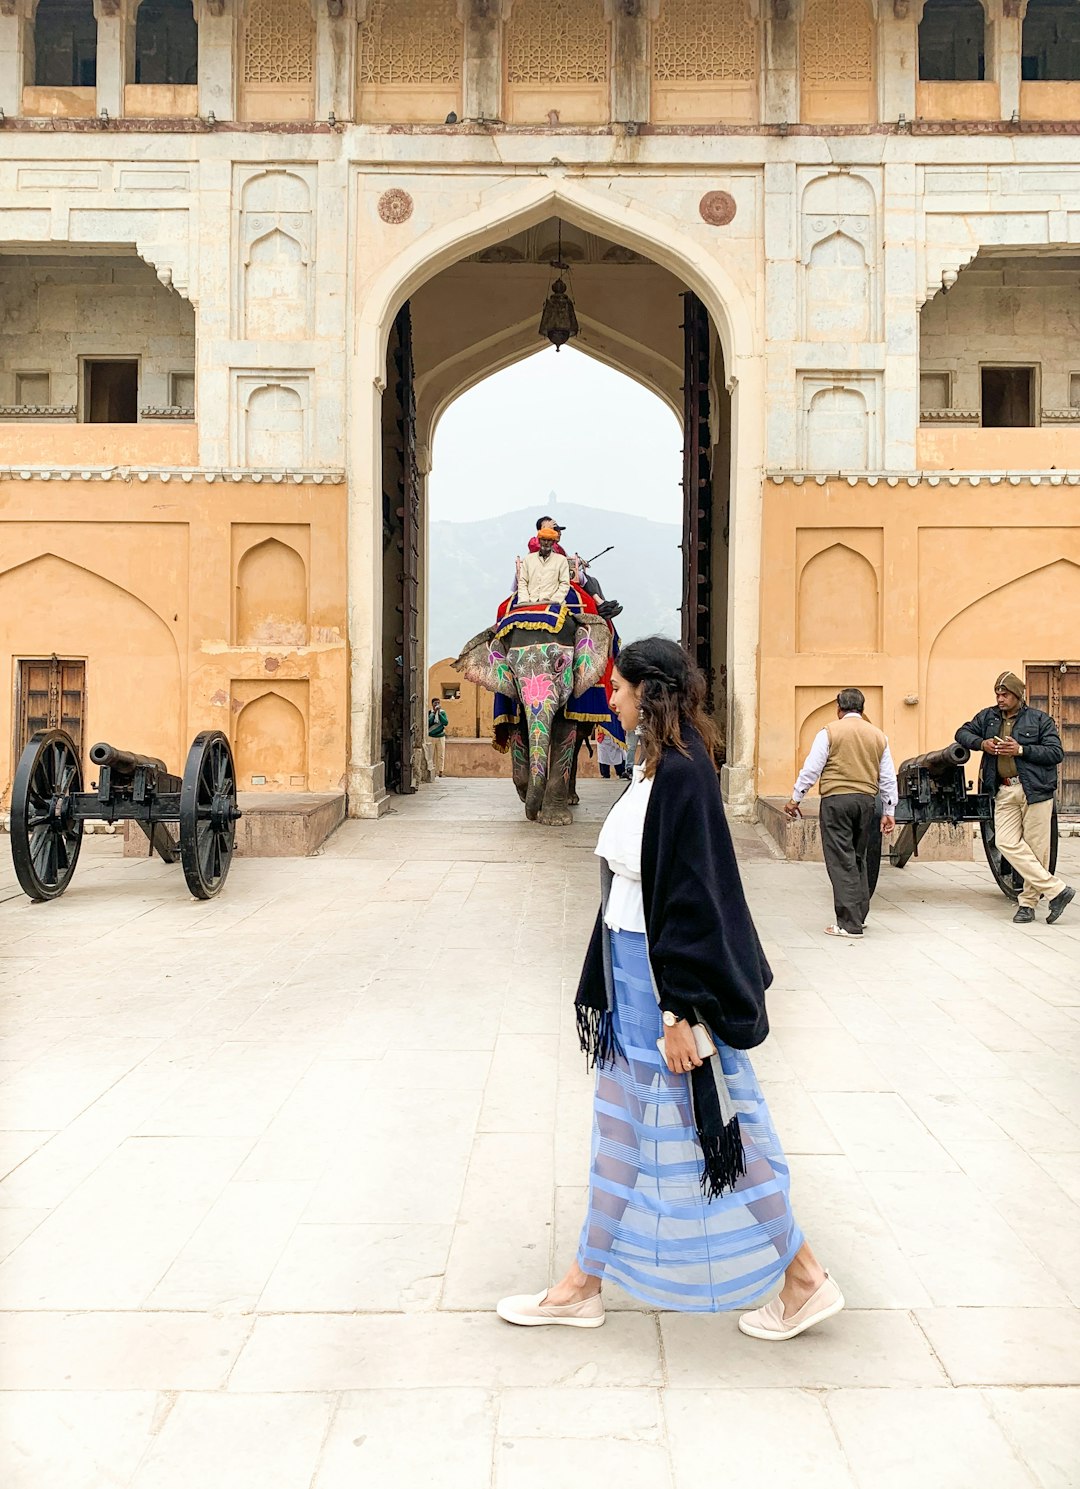 Temple photo spot Amer Fort Jantar Mantar - Jaipur